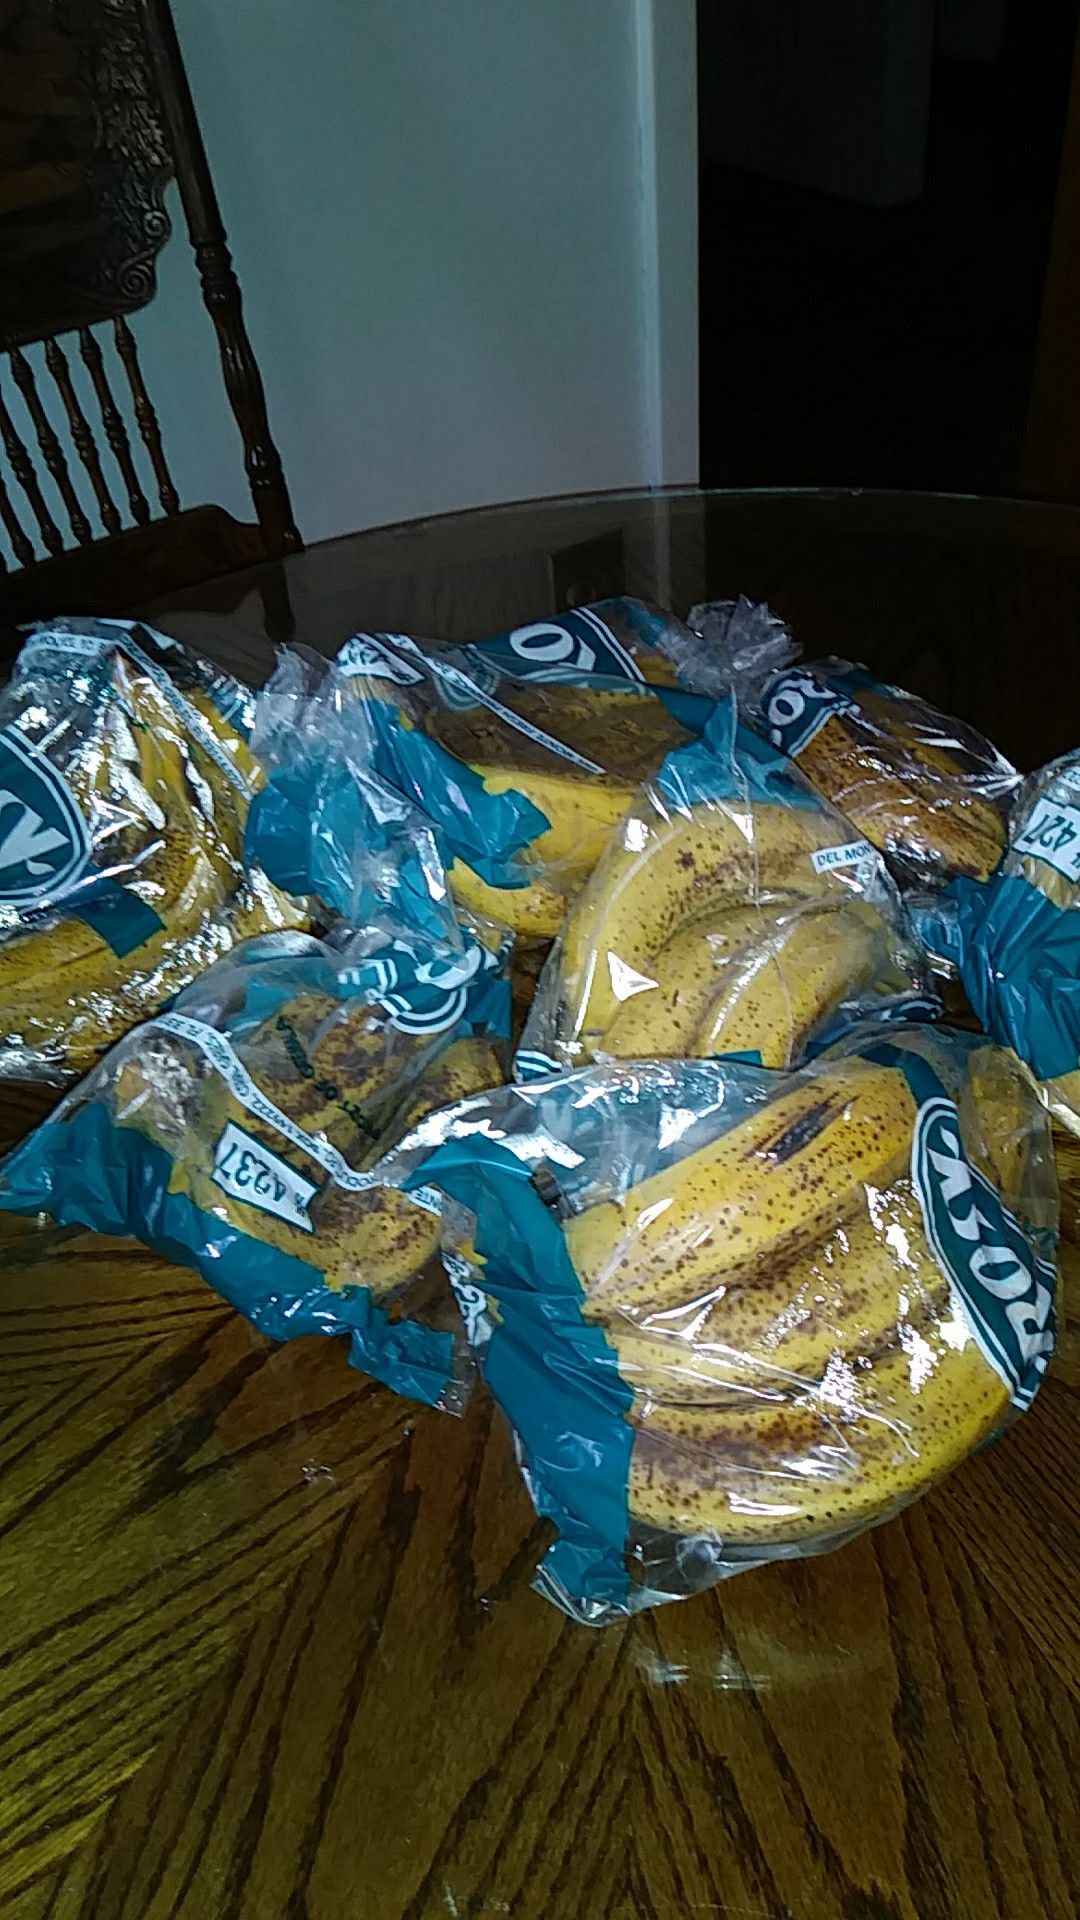 Free bananas